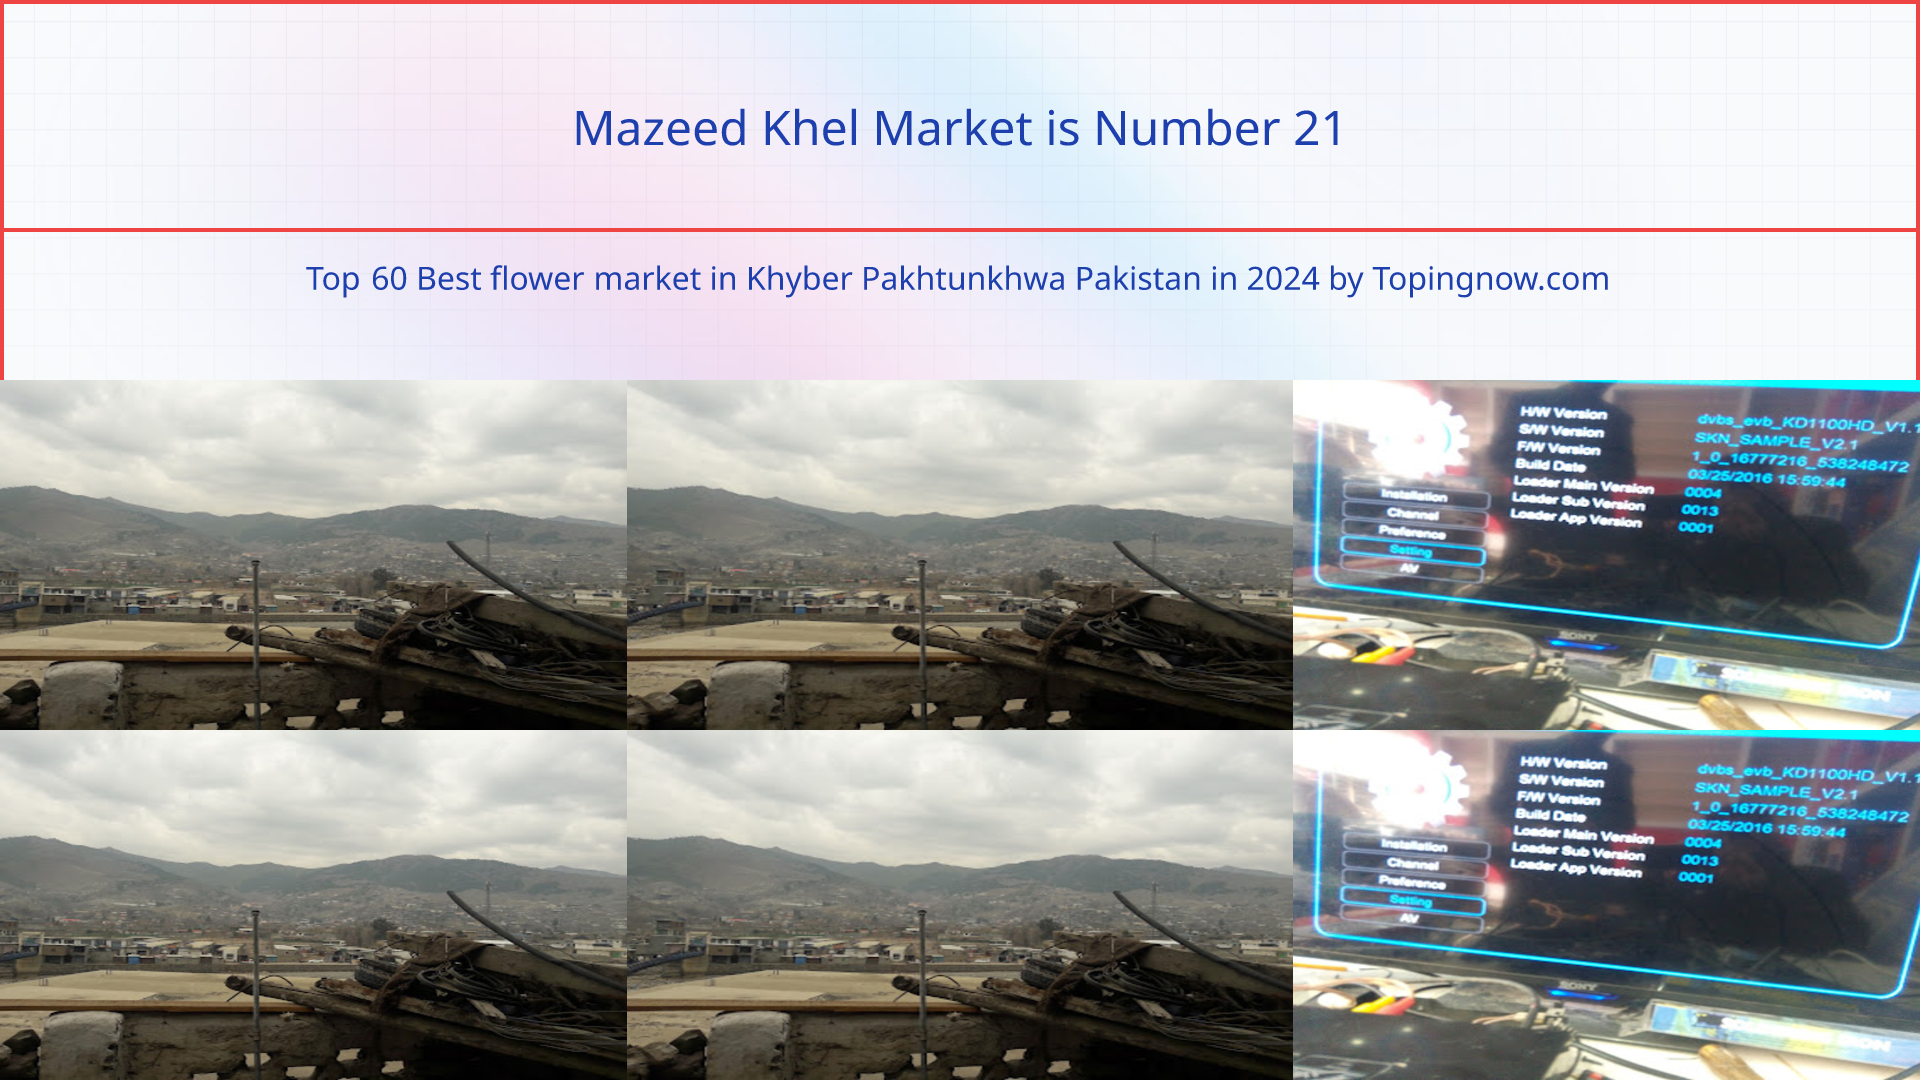 Mazeed Khel Market: Top 60 Best flower market in Khyber Pakhtunkhwa Pakistan in 2024